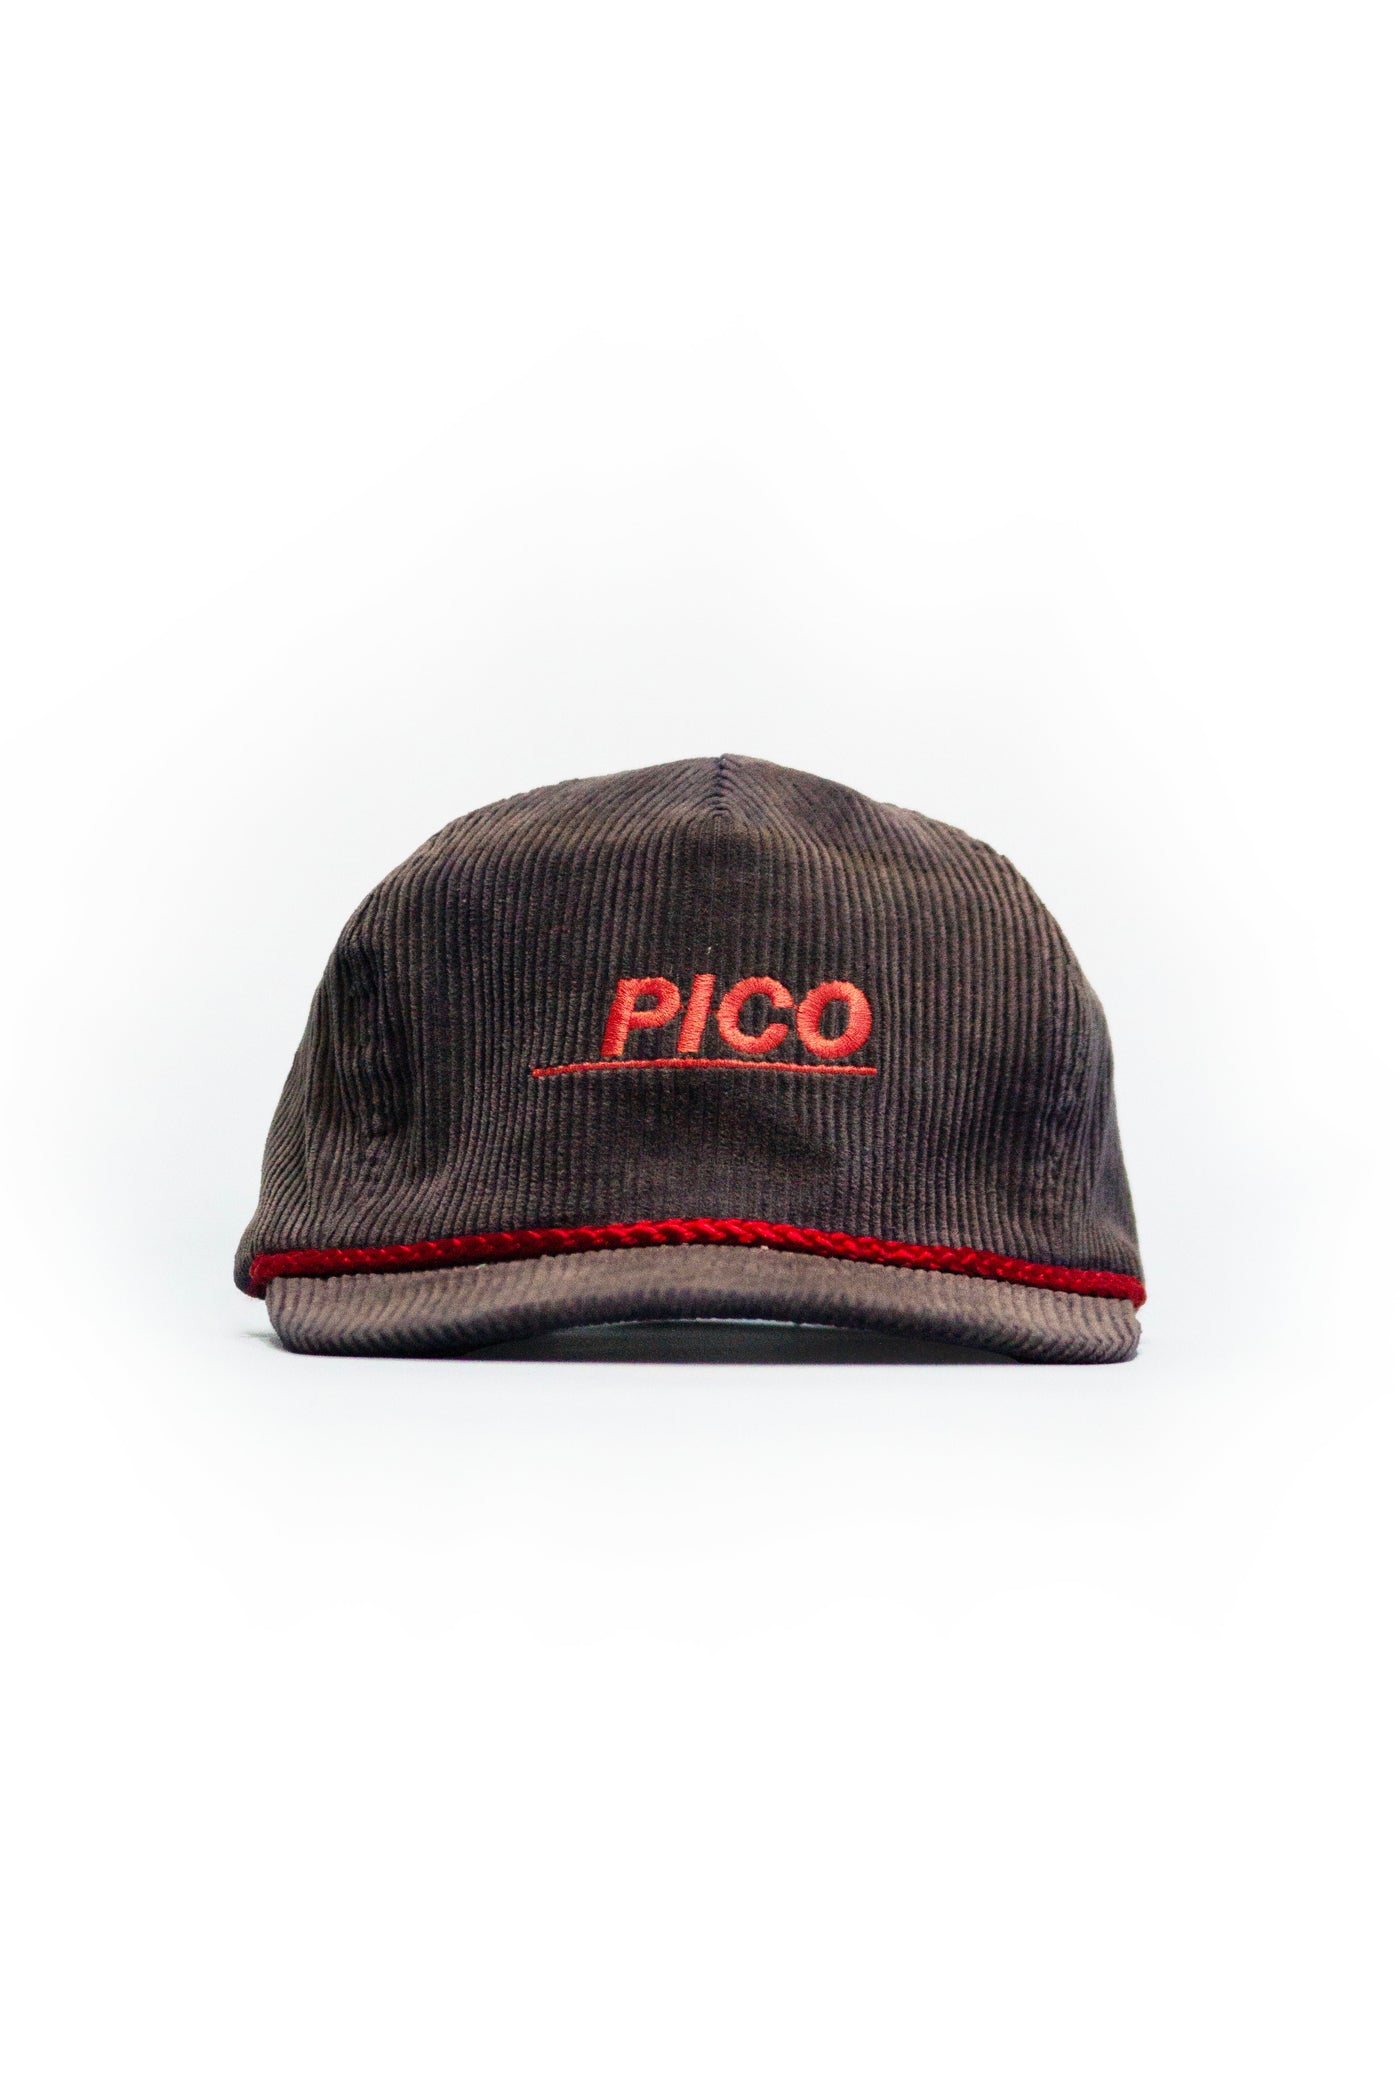 Vintage 80s Mt. Pico VT Corduroy Hat